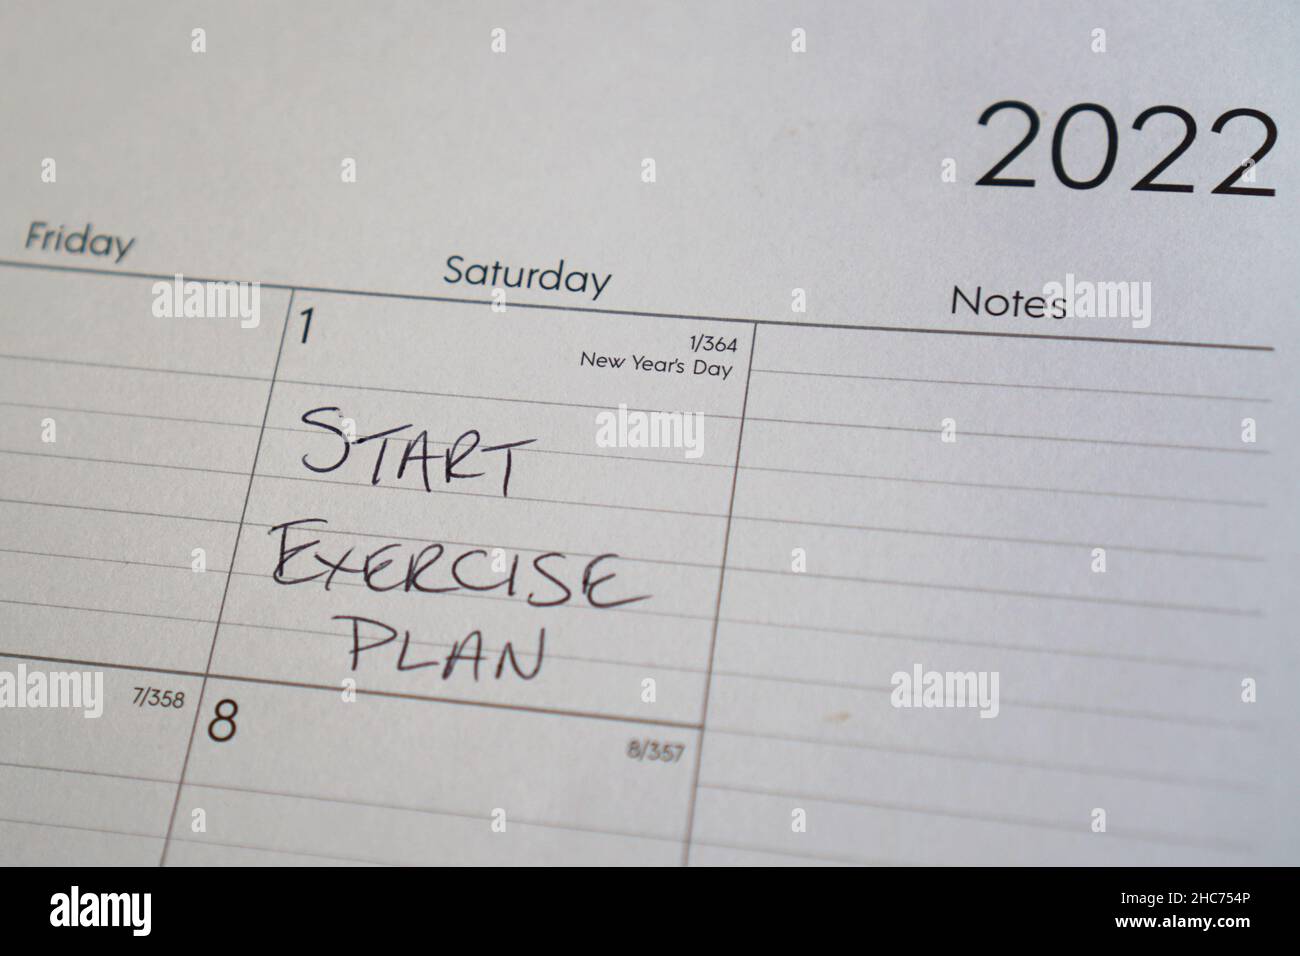 Cliché sélectif d’un rappel de calendrier pour démarrer le plan d’exercice le jour de la nouvelle année Banque D'Images